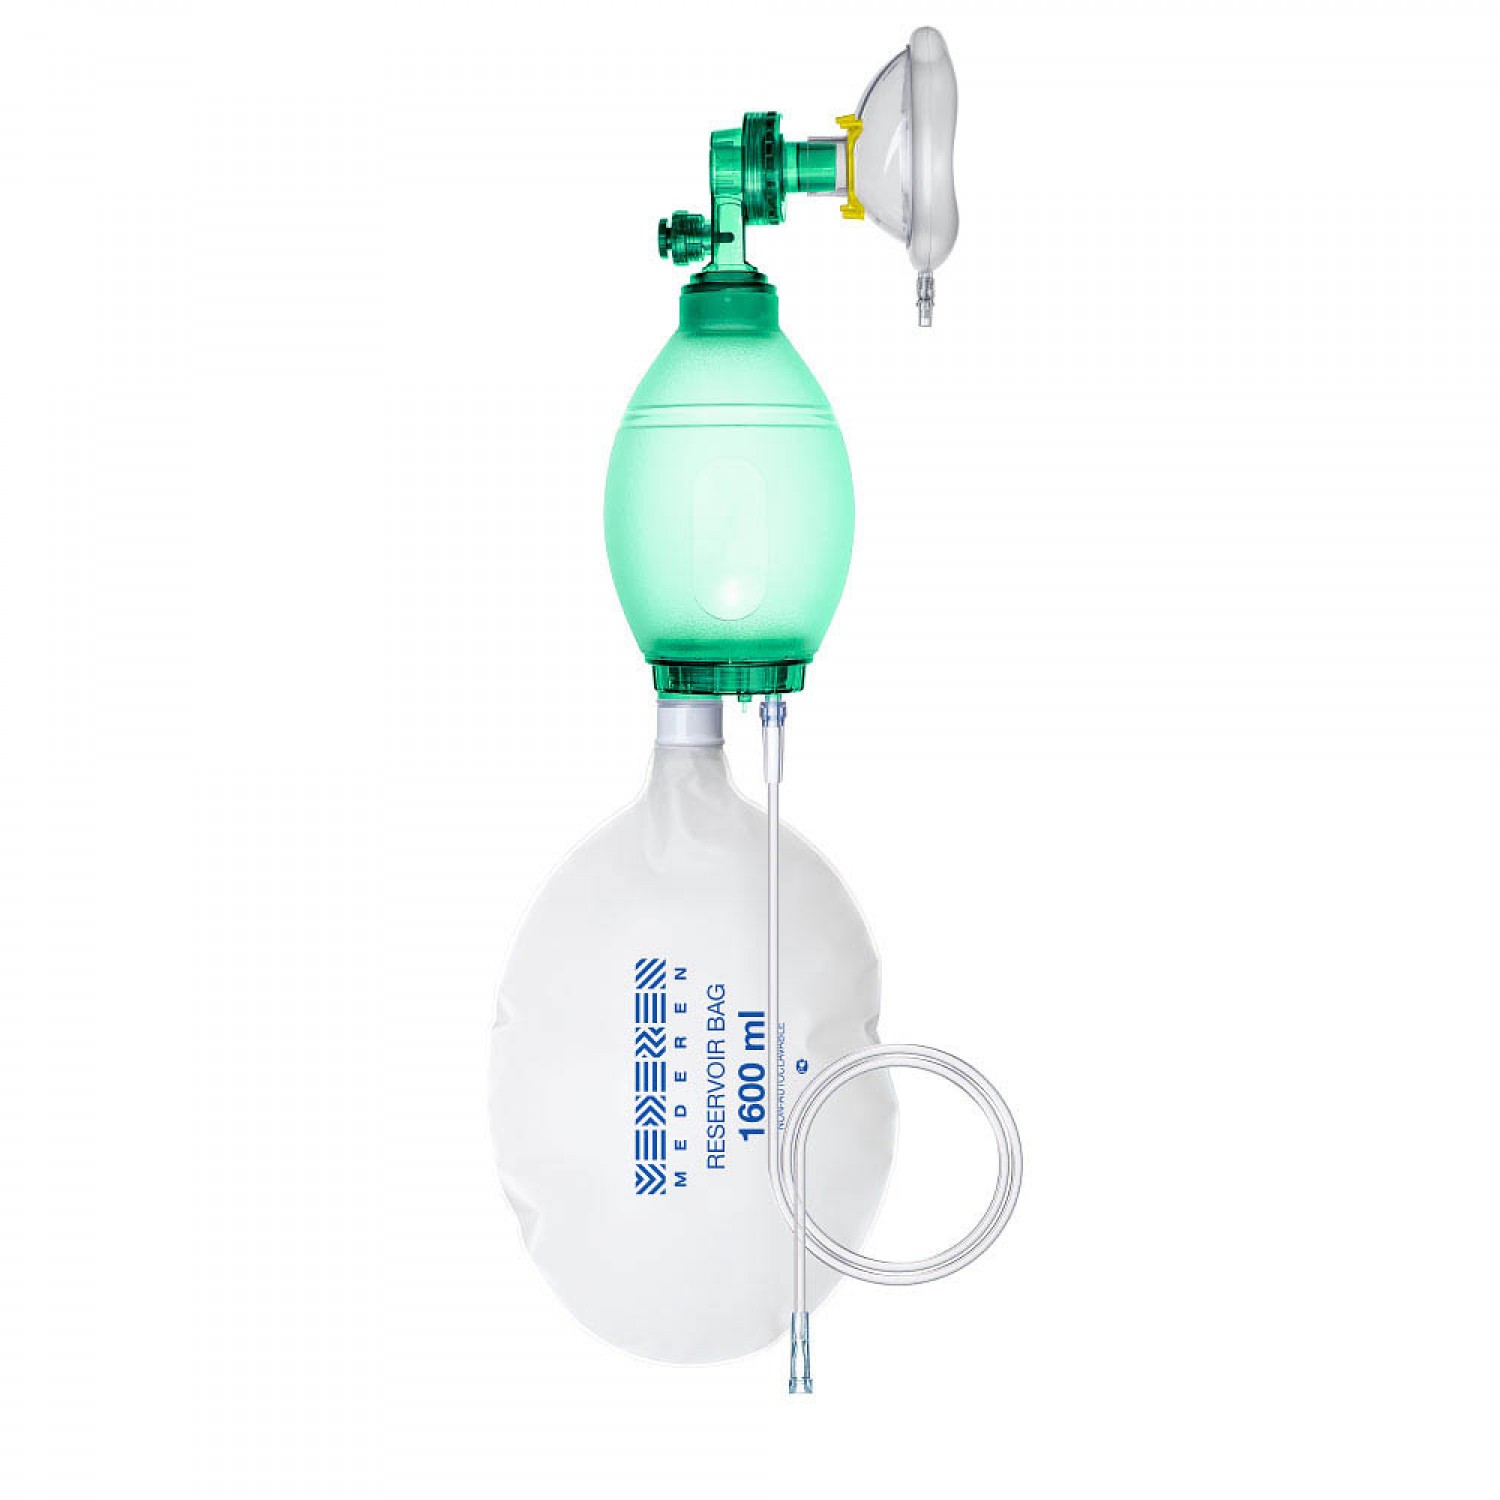 Manual Artificial lung ventilation device (Ambu Bag) 15